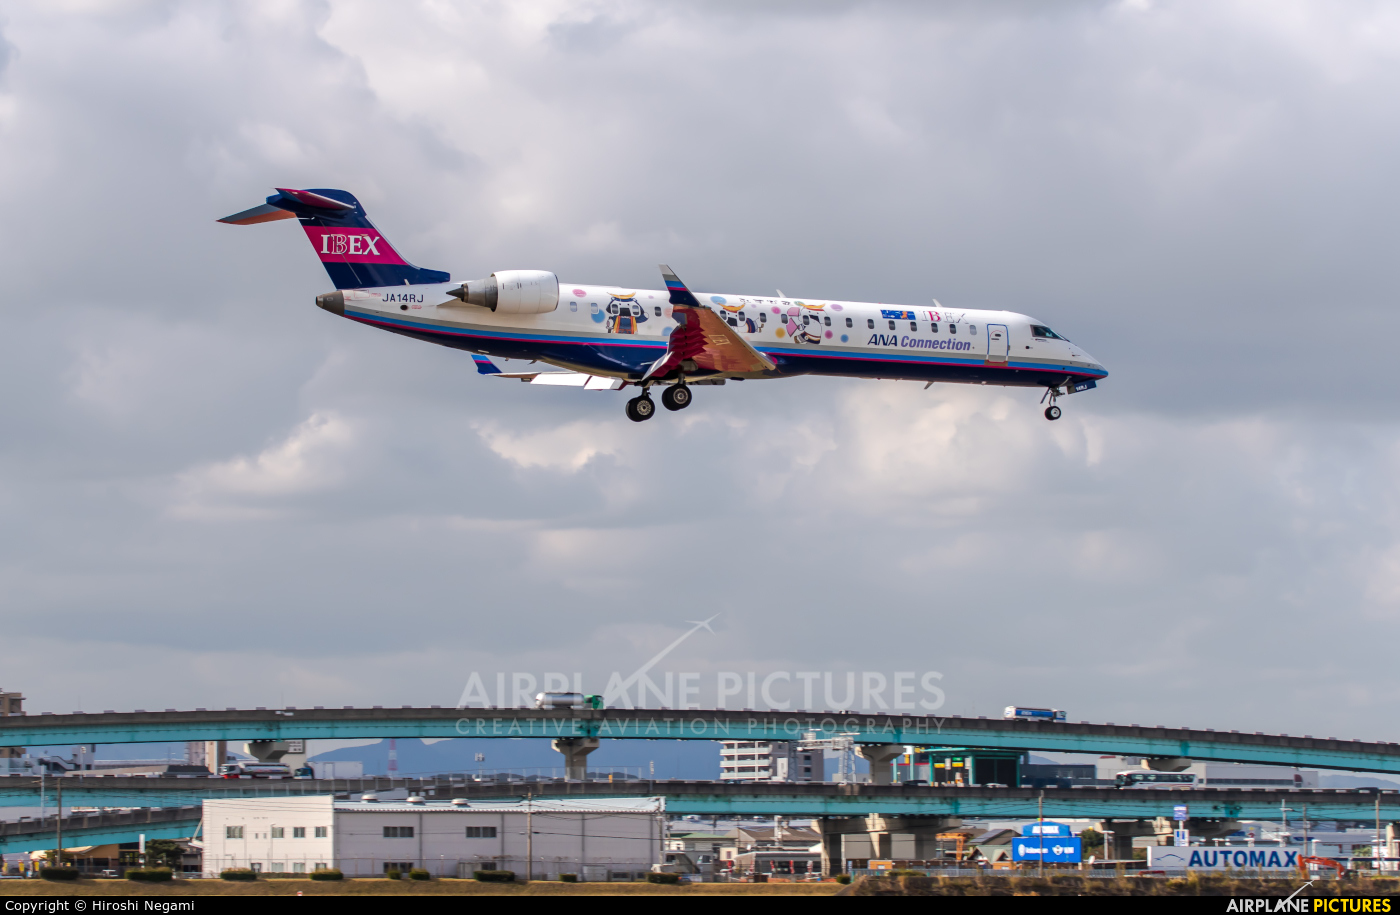 Ibex Airlines - ANA Connection JA14RJ aircraft at Fukuoka